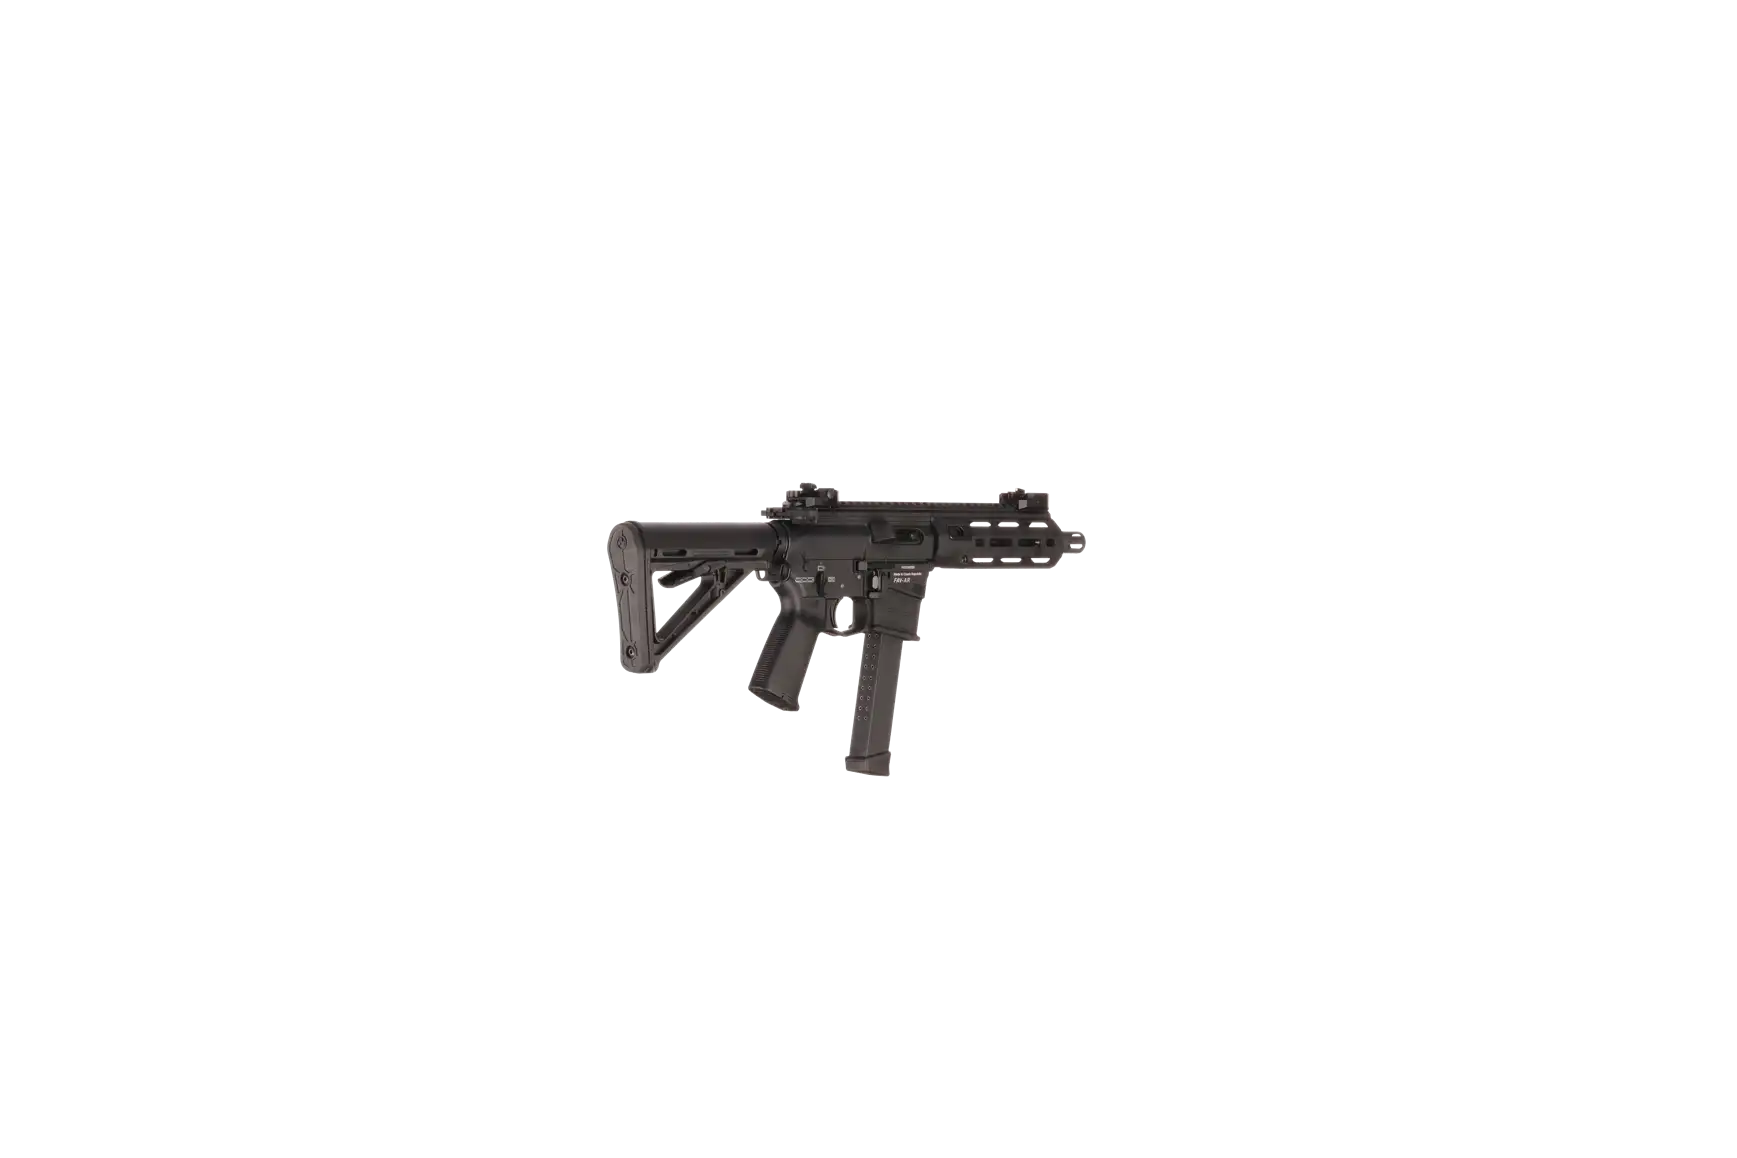 Náhledový obrázek pušky V-AR 9mm luger SPINVIEW 1 R63